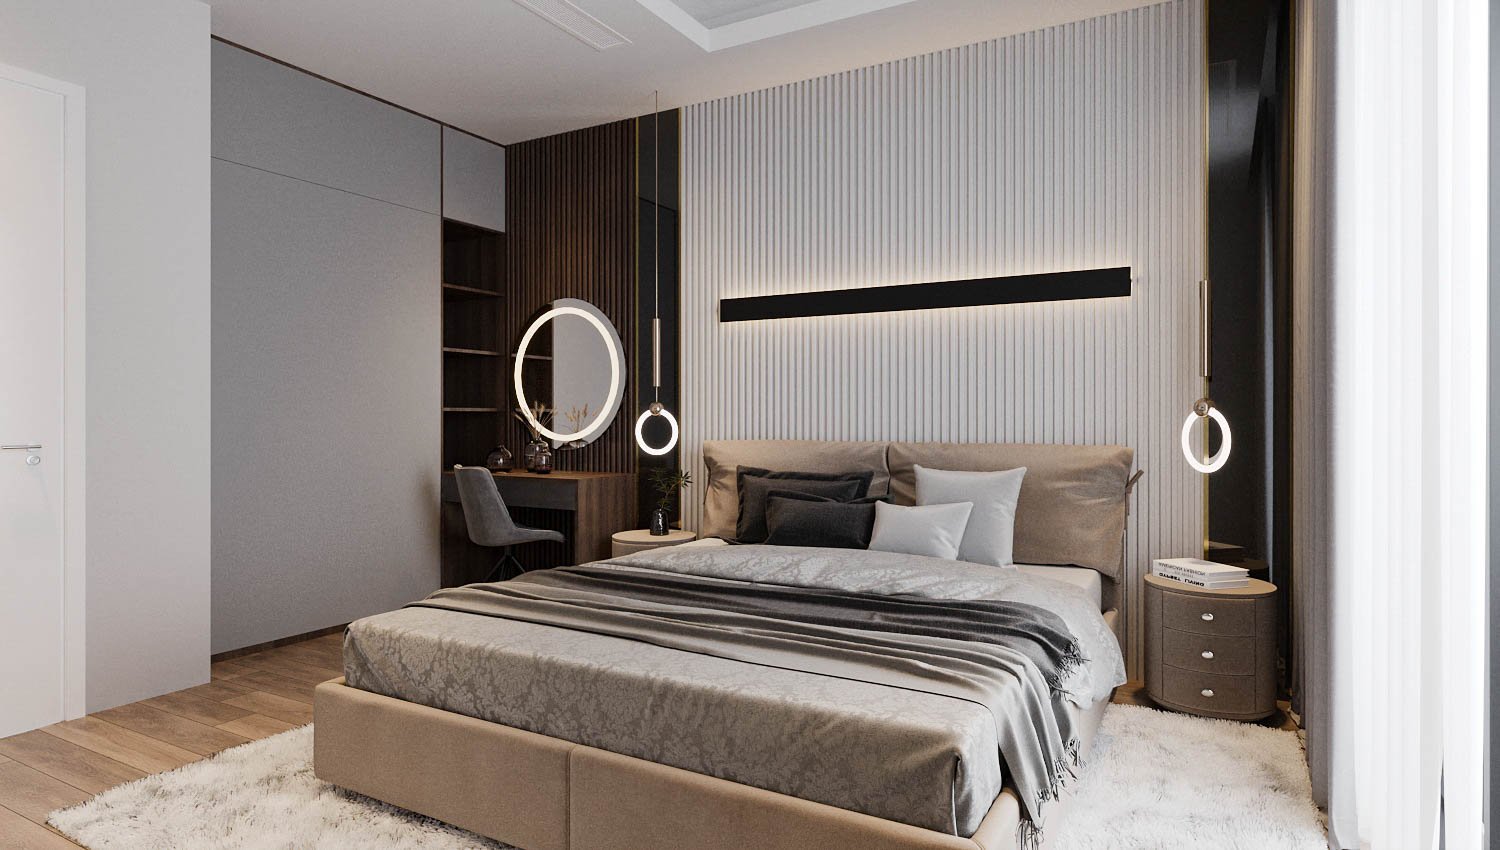 Mỗi phòng ngủ trong căn hộ Duplex được thiết kế theo nhu cầu, sở thích của chủ sở hữu với những điểm nhấn riêng biệt ở đầu giường.